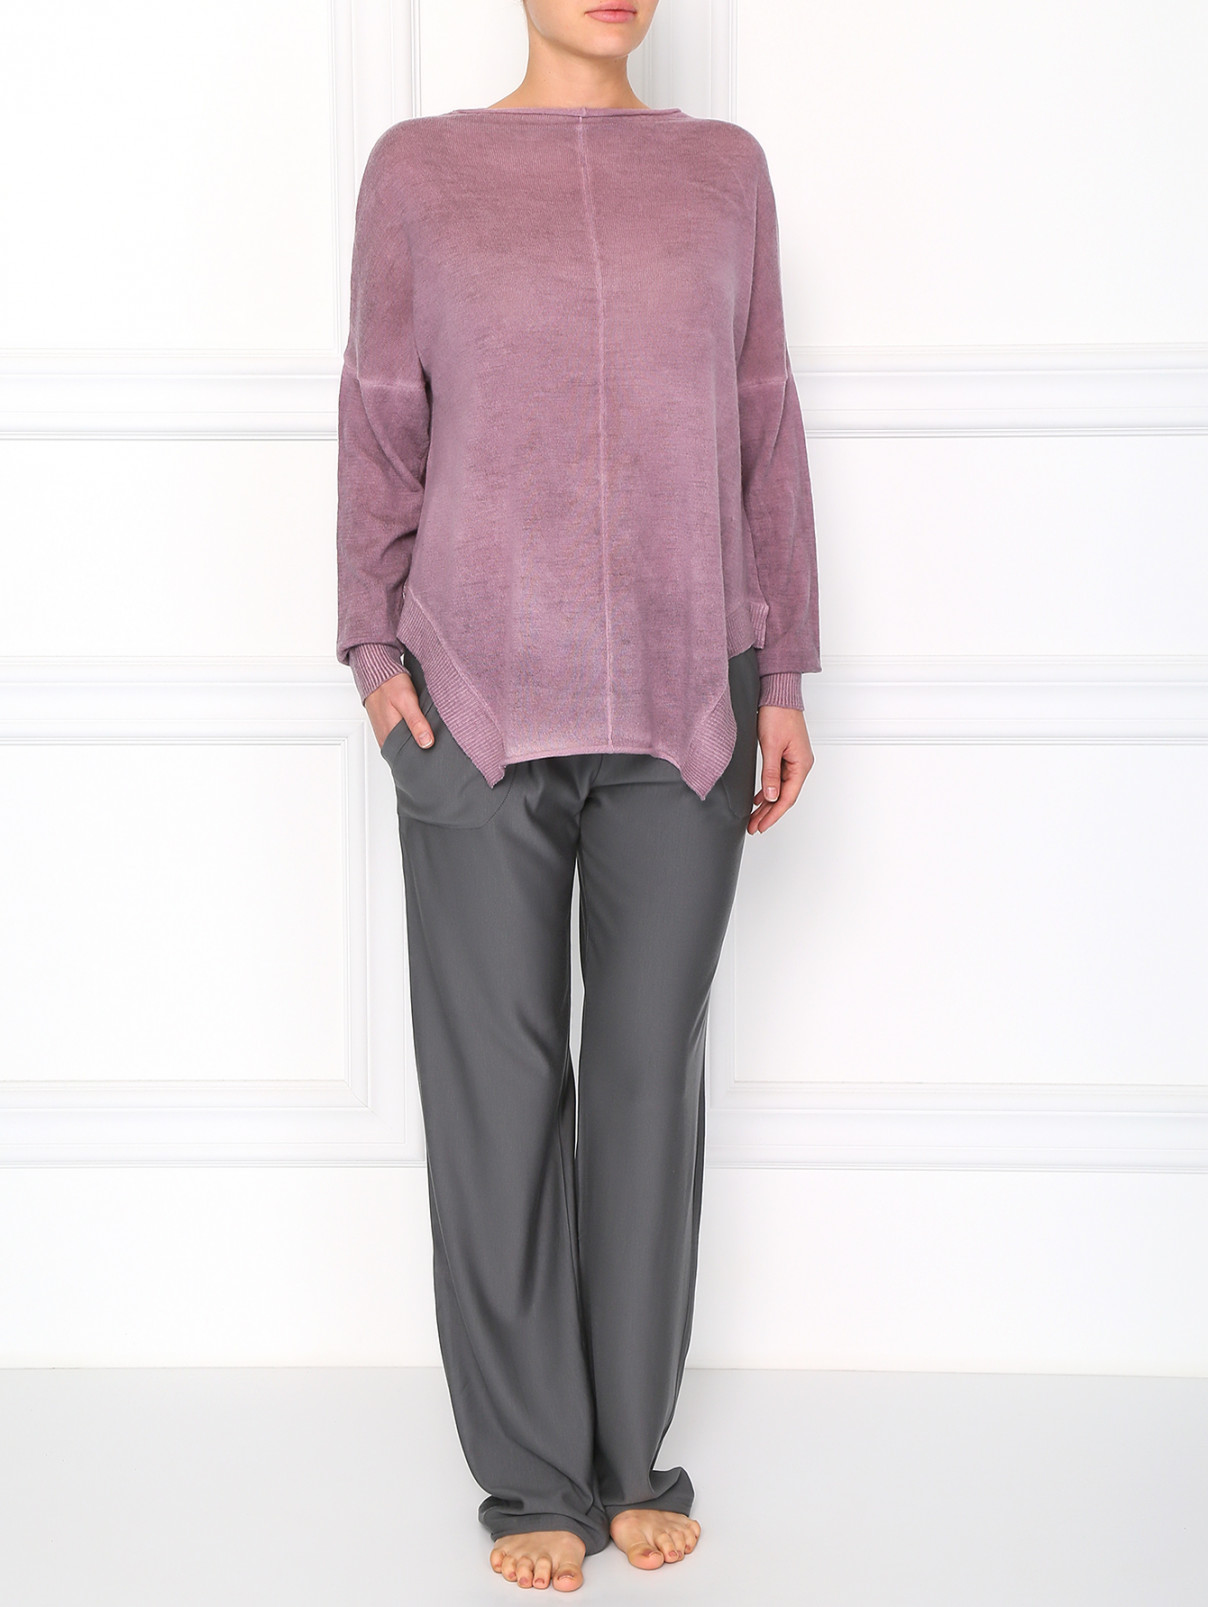 Пуловер из шерсти свободного фасона Pierre Mantoux  –  Модель Общий вид  – Цвет:  Розовый